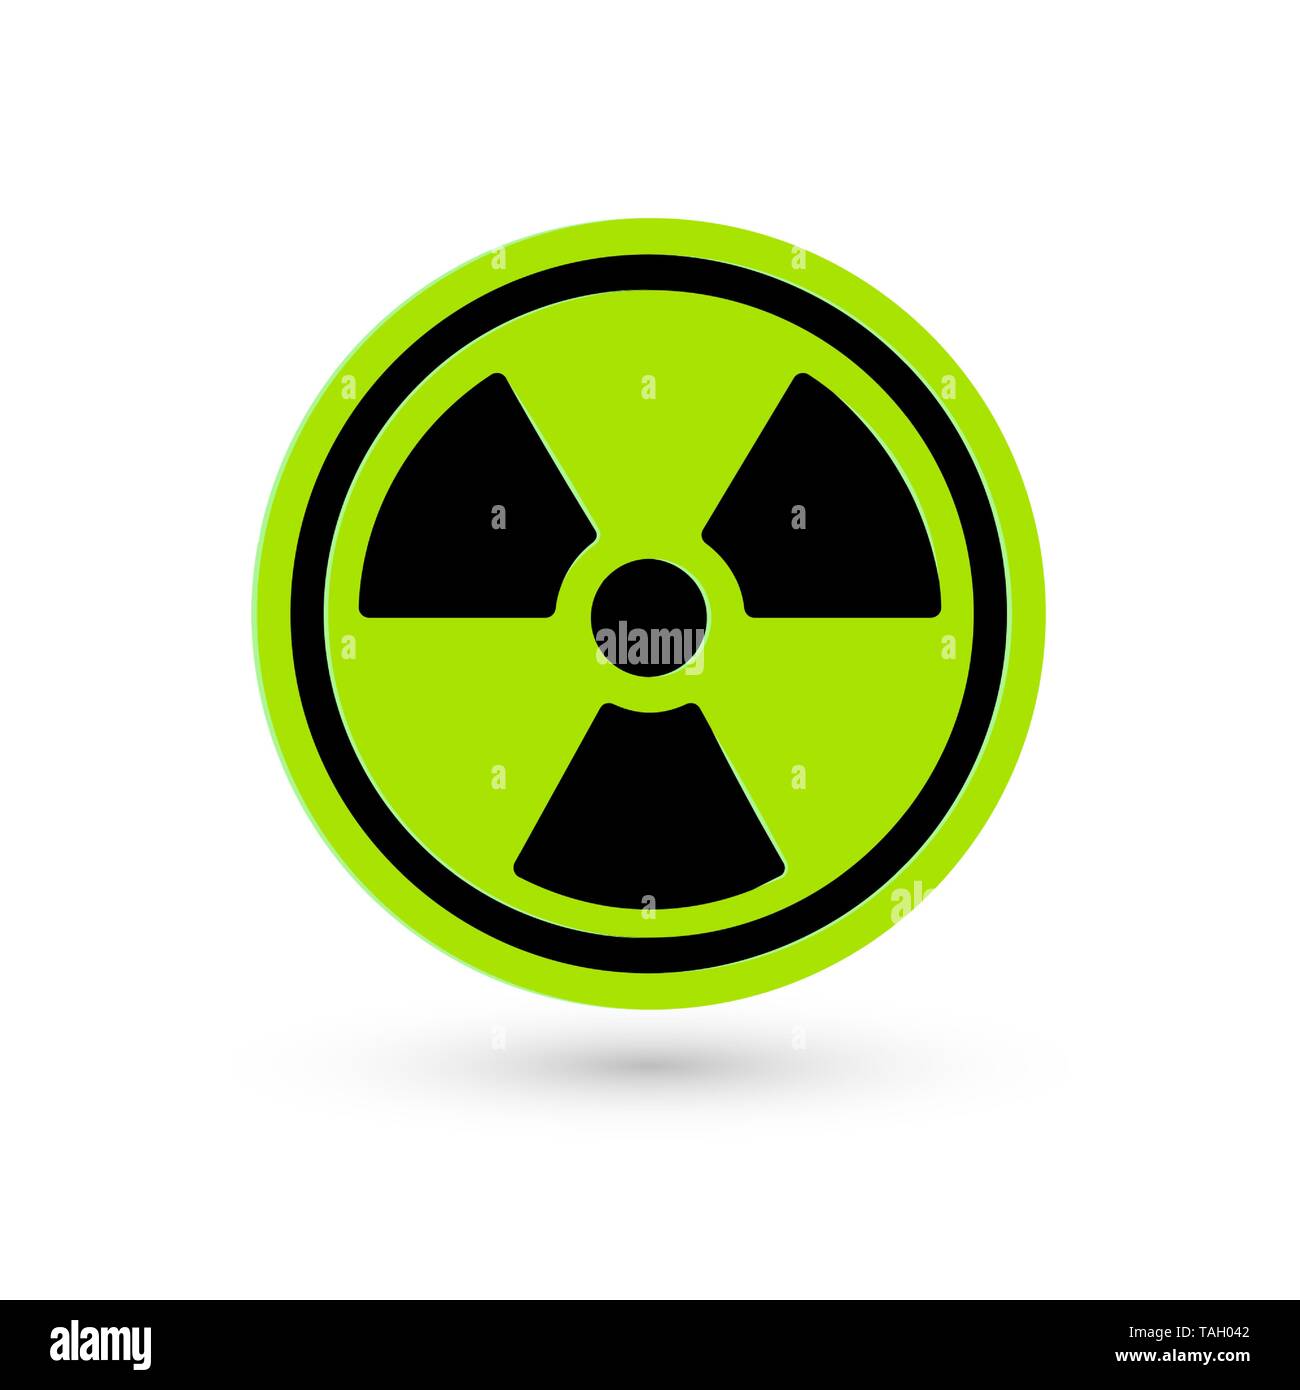 Tossico vettore verde icona. Pittogramma di radiazione. Rischio di biotossicità simbolo. Scienza reattore atomico tech semplice isolato logo chimici Illustrazione Vettoriale